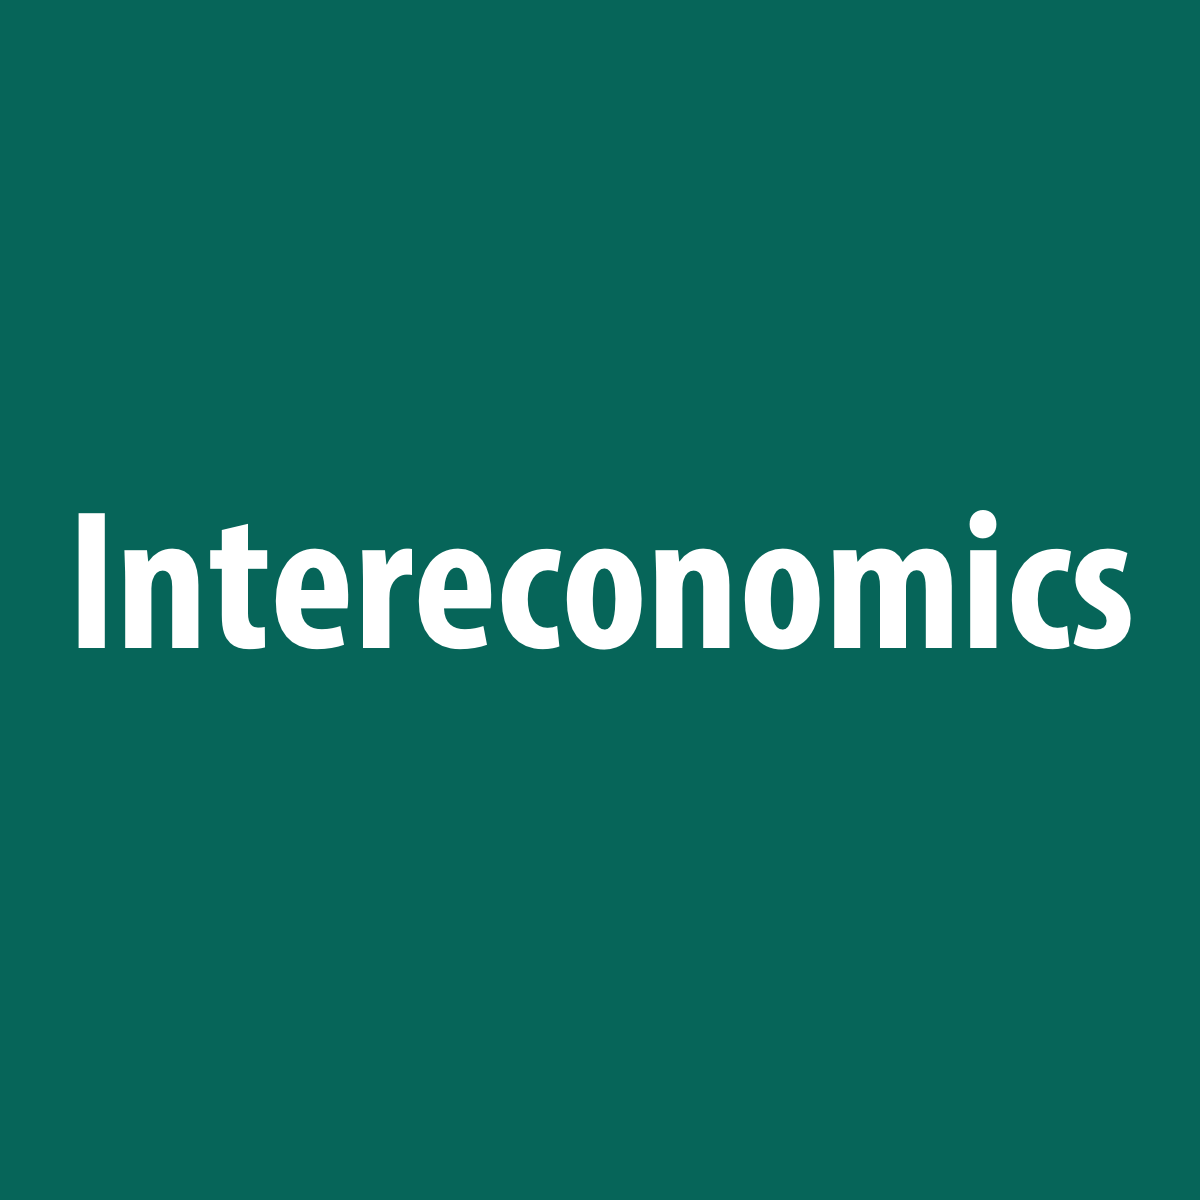 www.intereconomics.eu